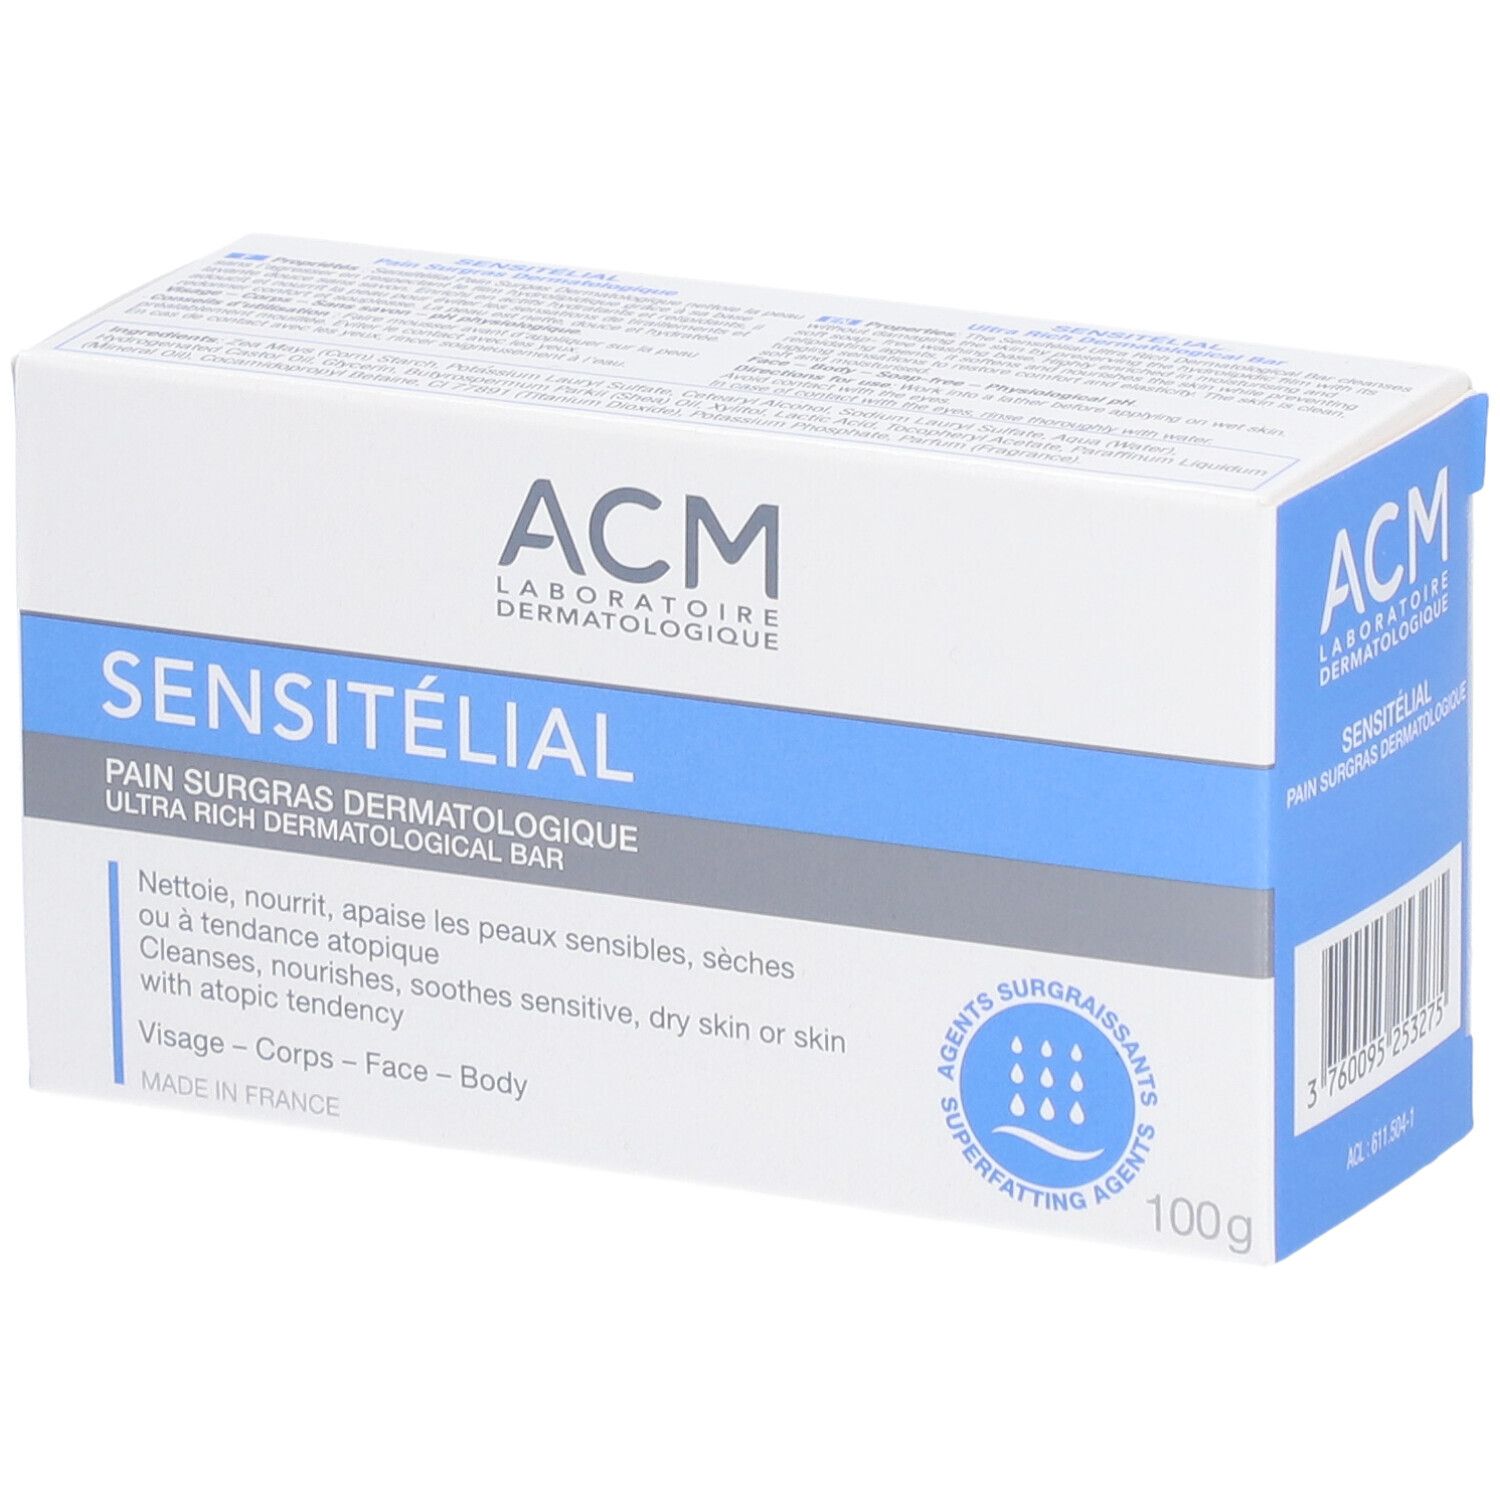 ACM Sensitélial Pain surgras dermatologique